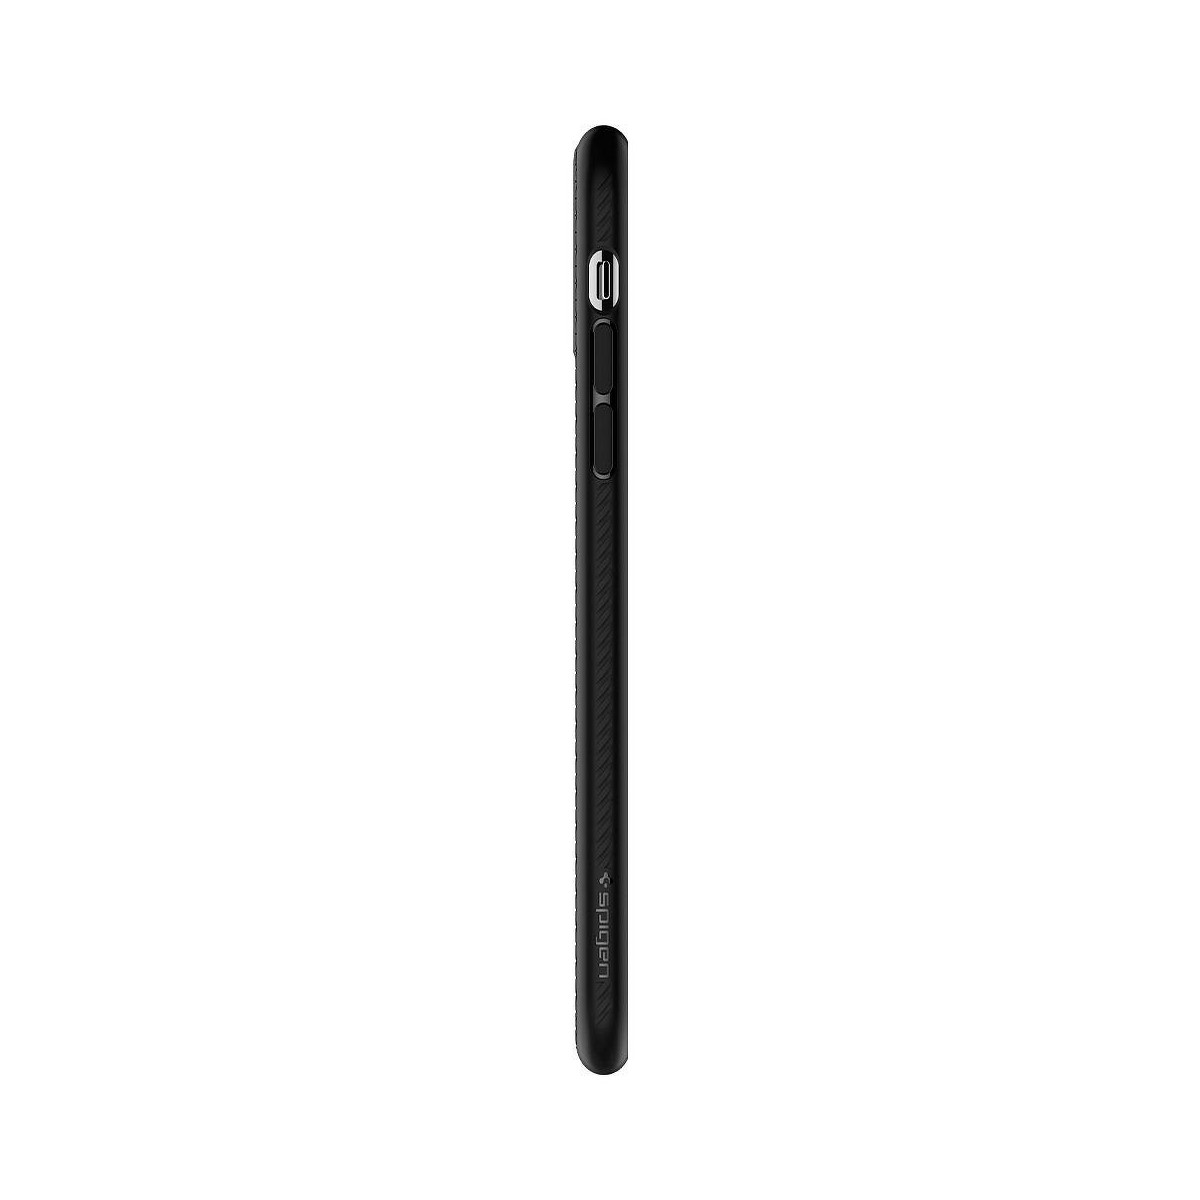 Coque compatible iPhone 11 Pro Max Liquid Air noir mat - Spigen